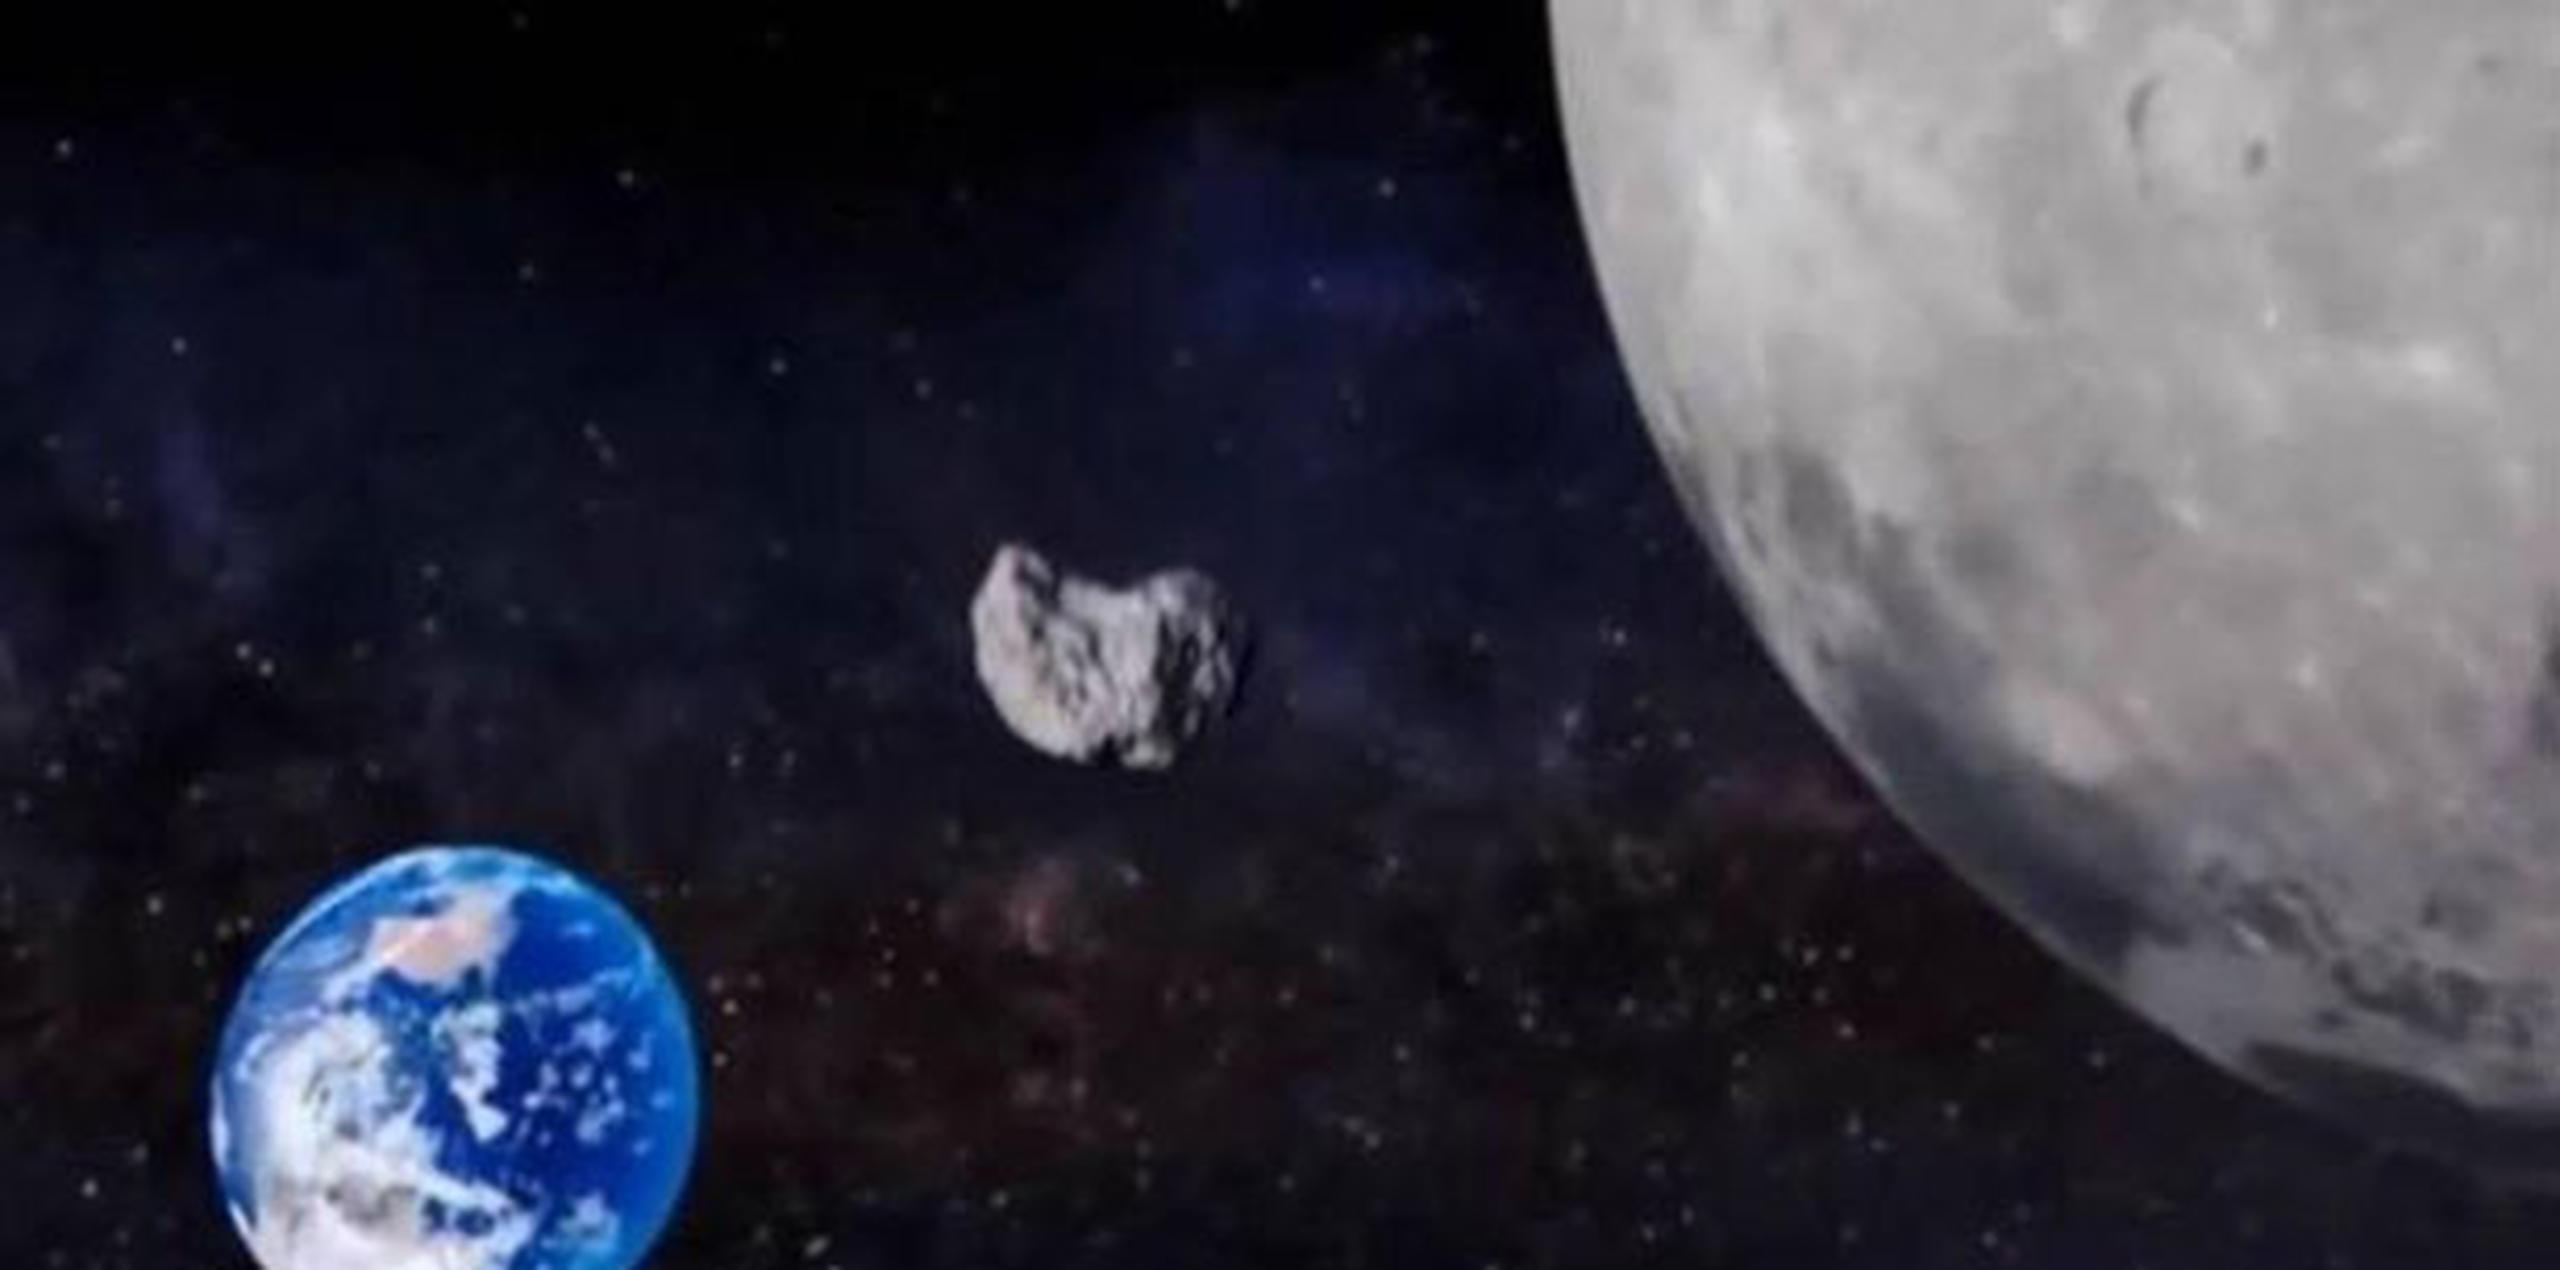 El reciente paso cercano de varias rocas espaciales no necesariamente significa un aumento en asteroides cercanos a la Tierra. (NASA)